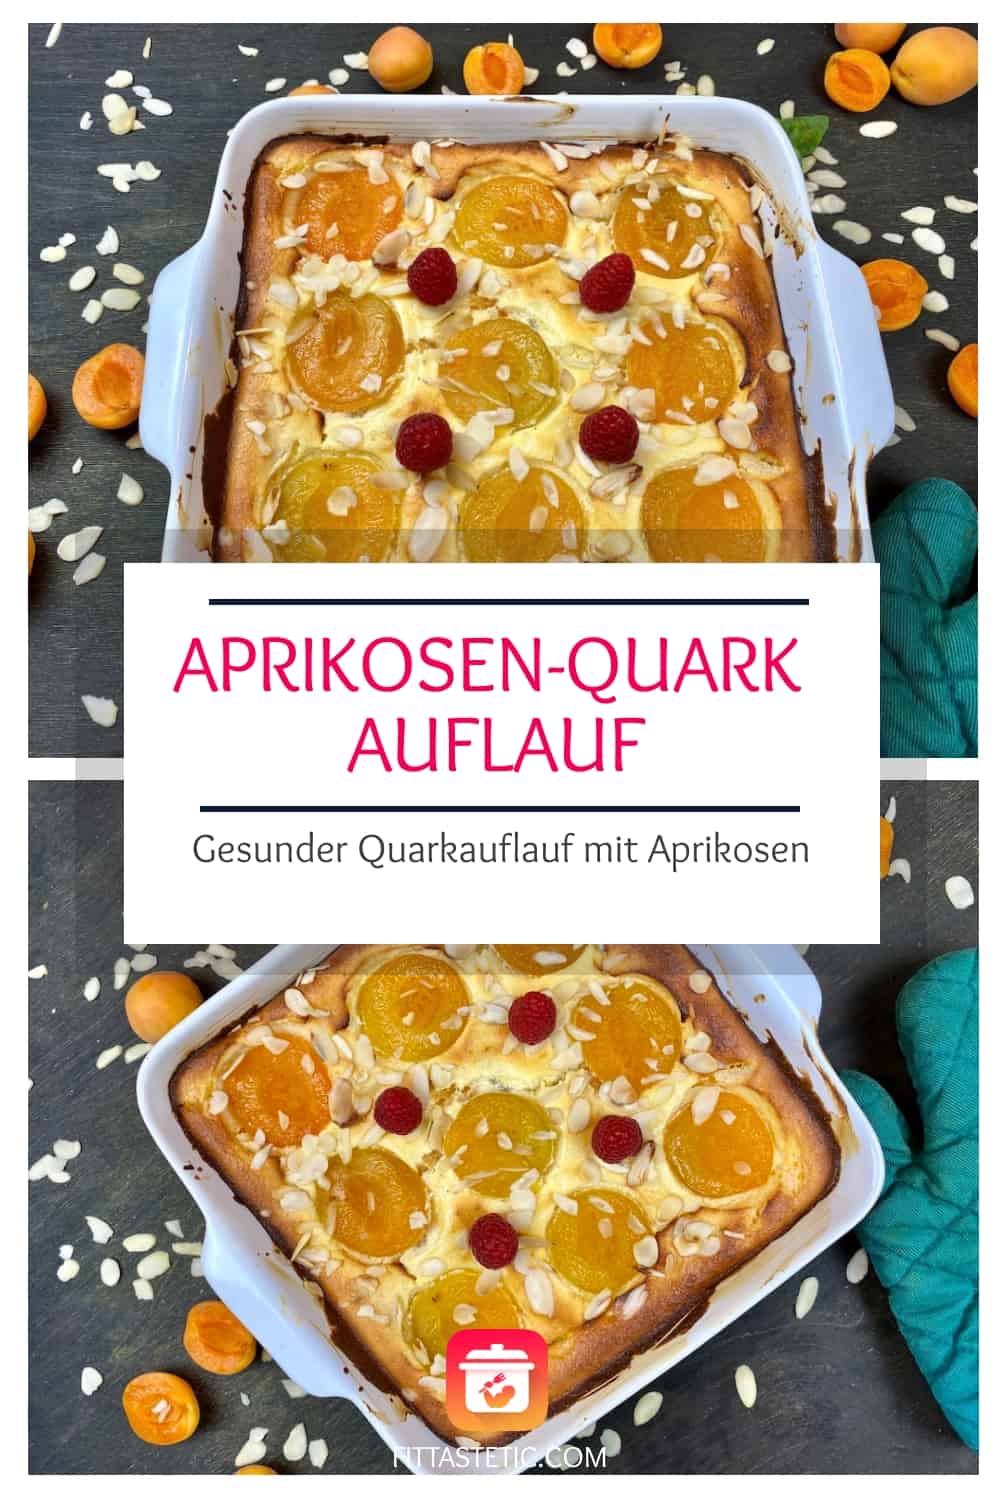 Aprikosen-Quark Auflauf - Gesunder Quarkauflauf